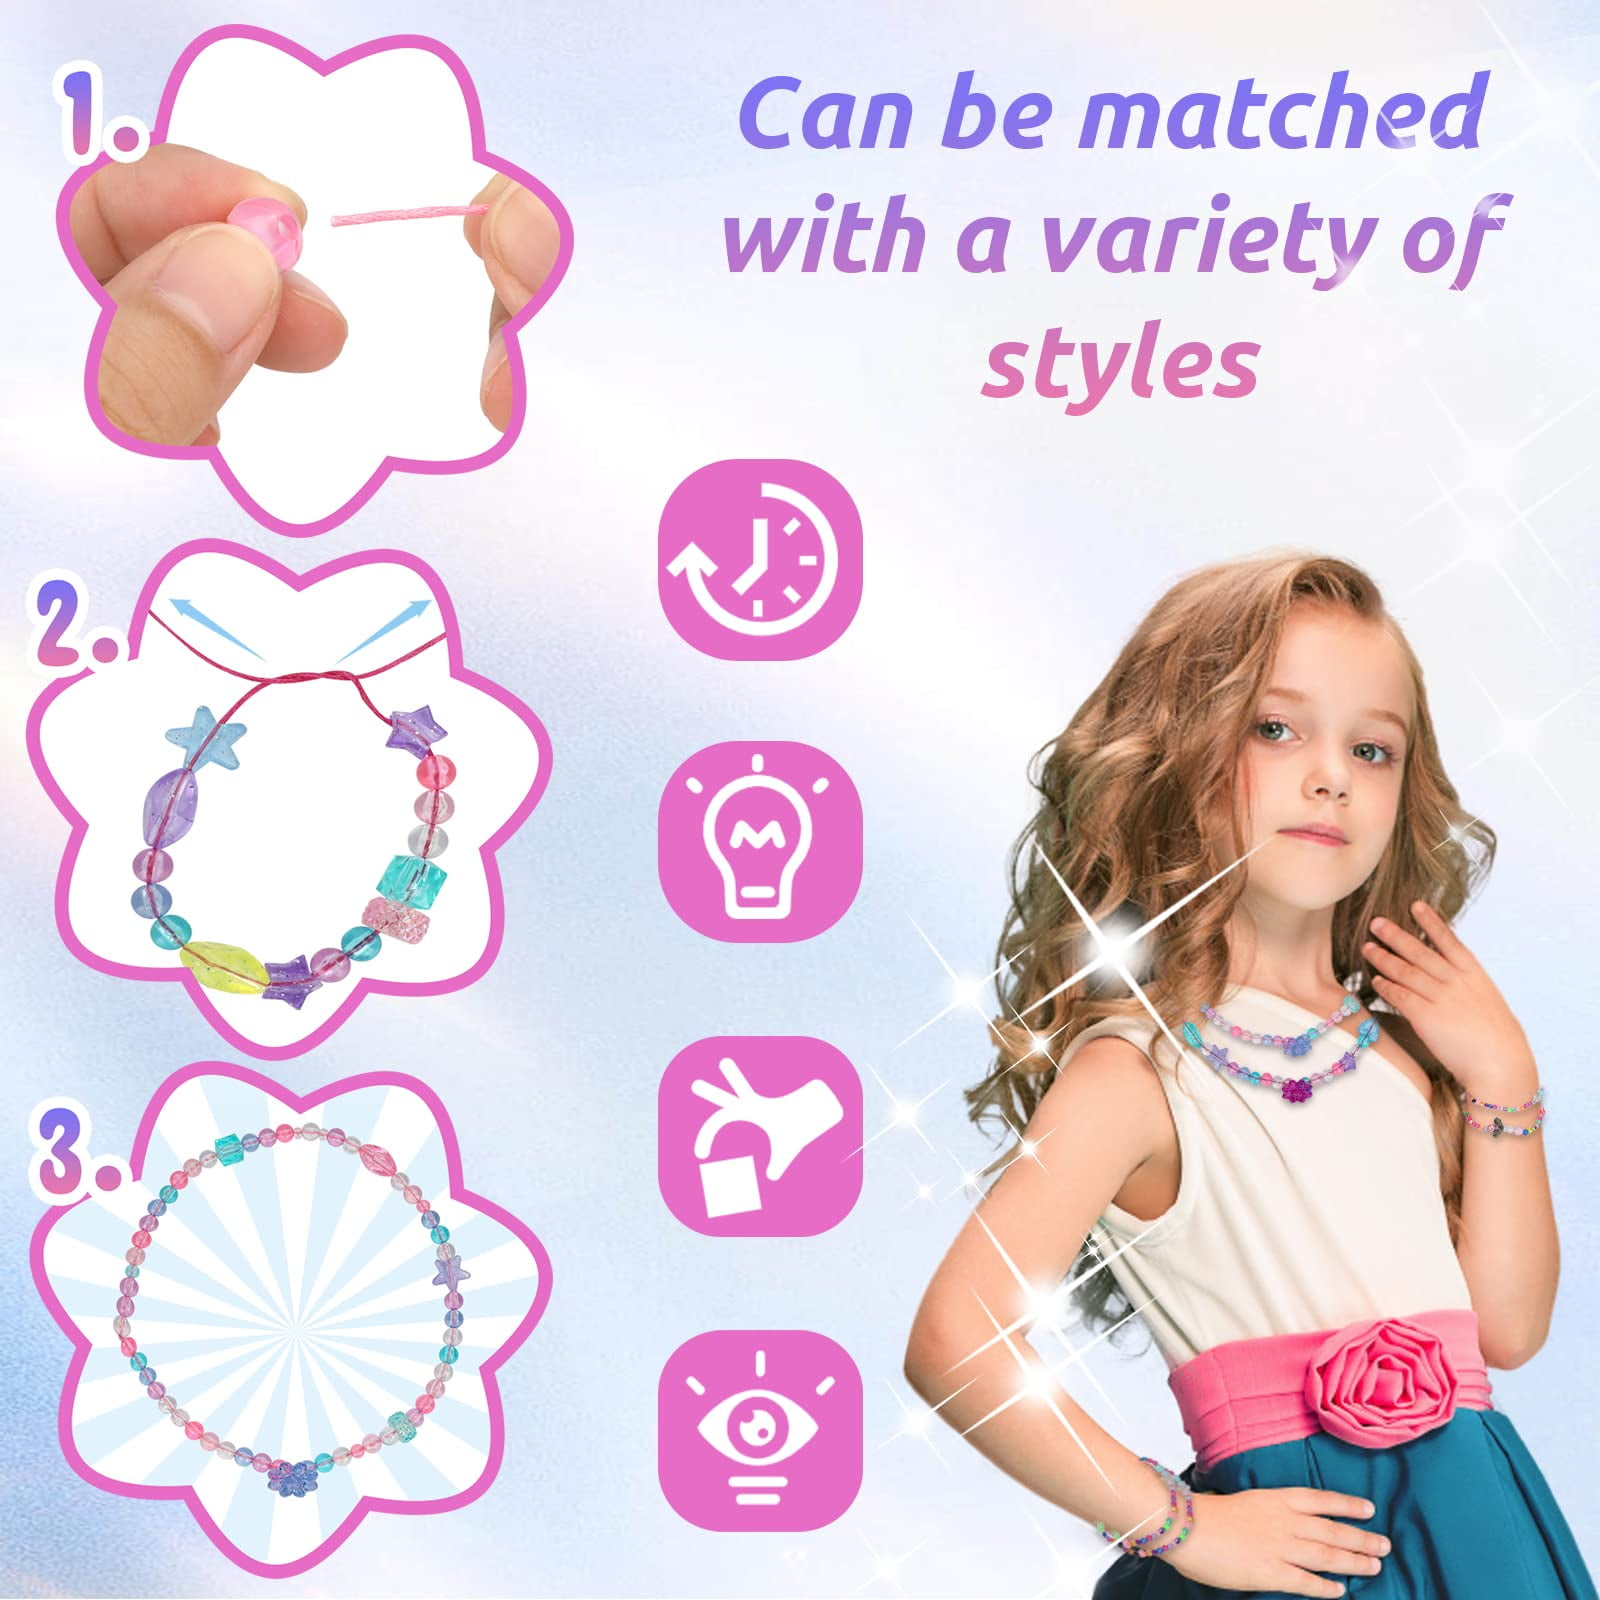 Pearoft Friendship Bracelet Kit for Girl Kids? DIY Bracelet Making Kit for  5-10 Year Old Kid Girls Birthday Gift for 5-12 Year Old Girl Children Charm